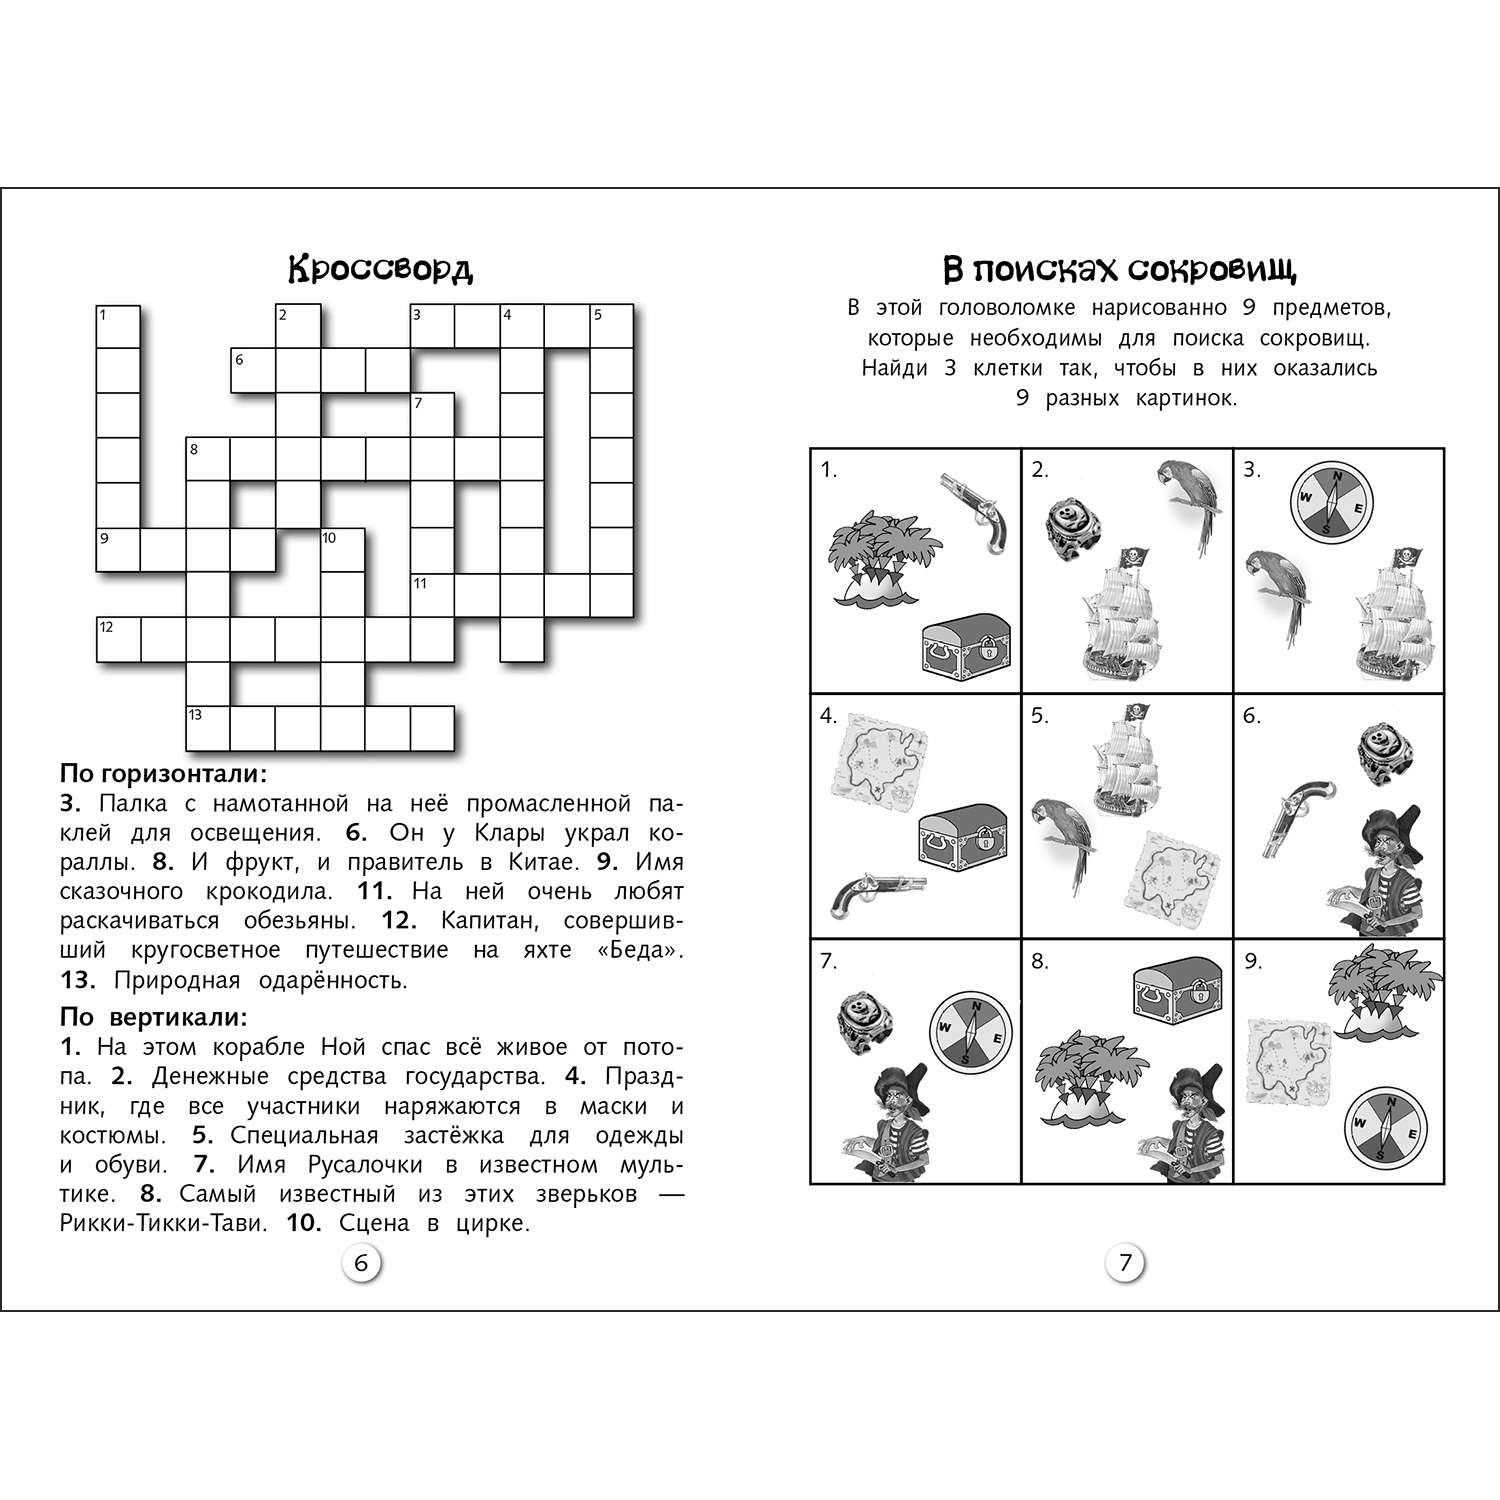 Книга Кроссворды и головоломки для школьников Выпуск 6 - фото 3